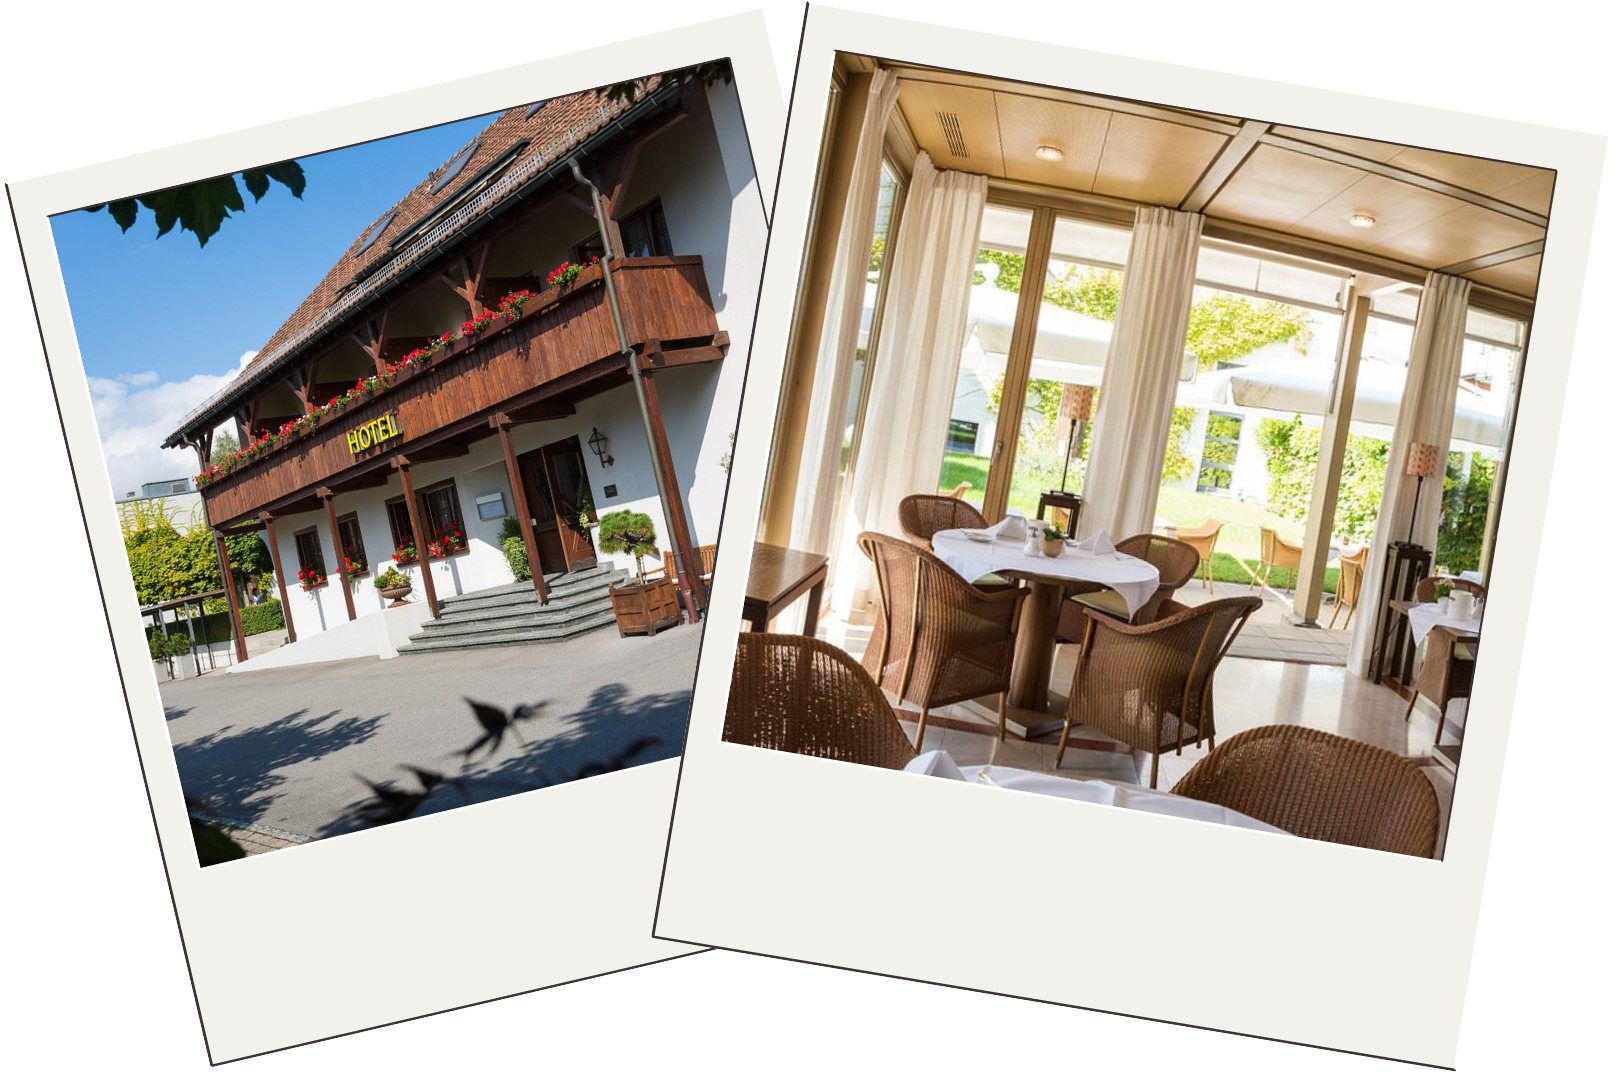 the best Liechtenstein hotels